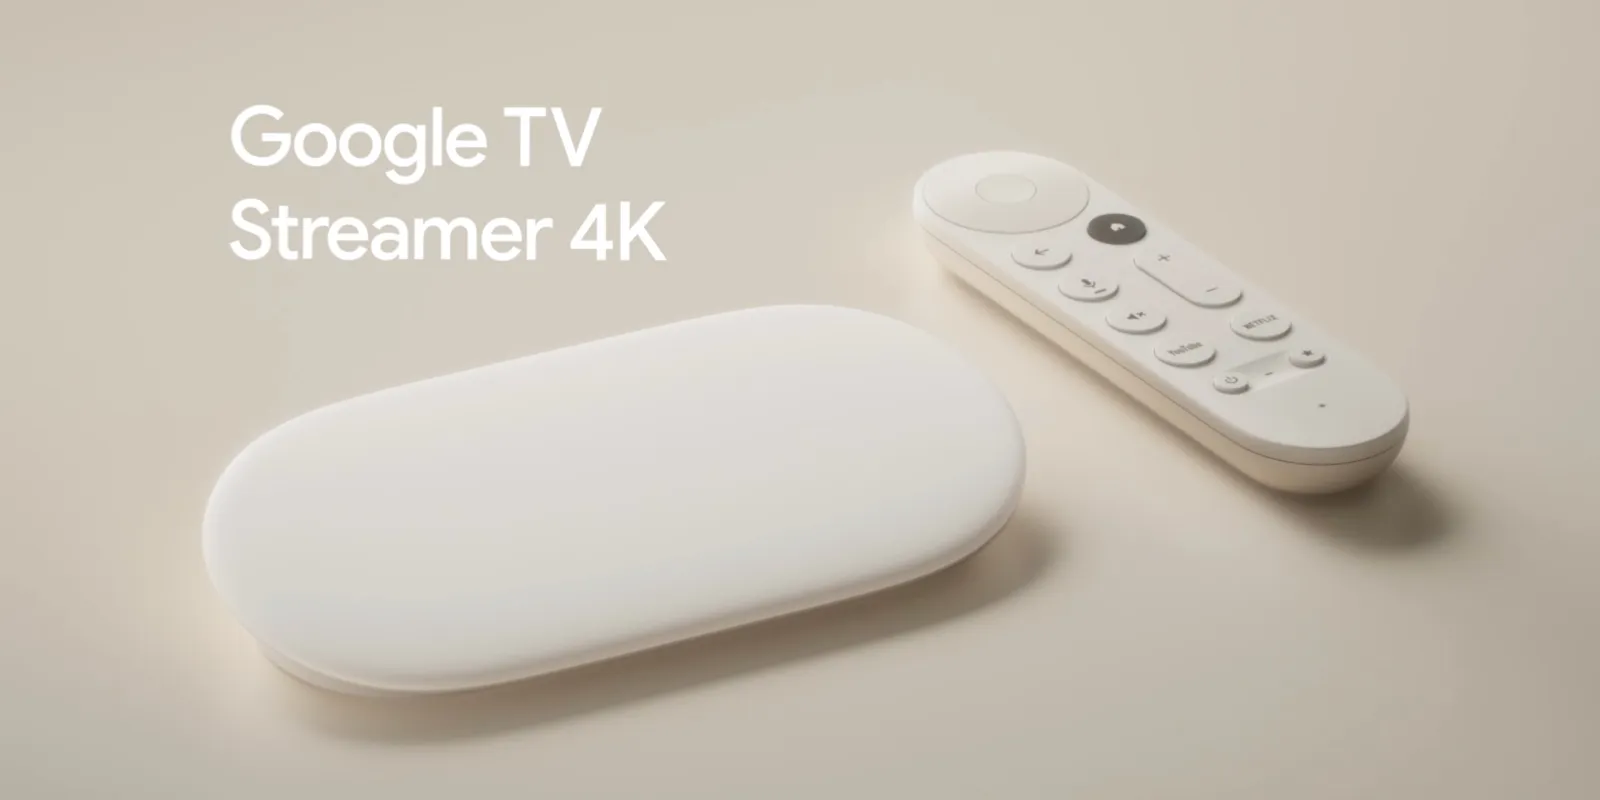 Google stellt den neuen Google TV Streamer vor: leistungsfähiger, mit aktualisiertem Design und Smart Home-Funktionen